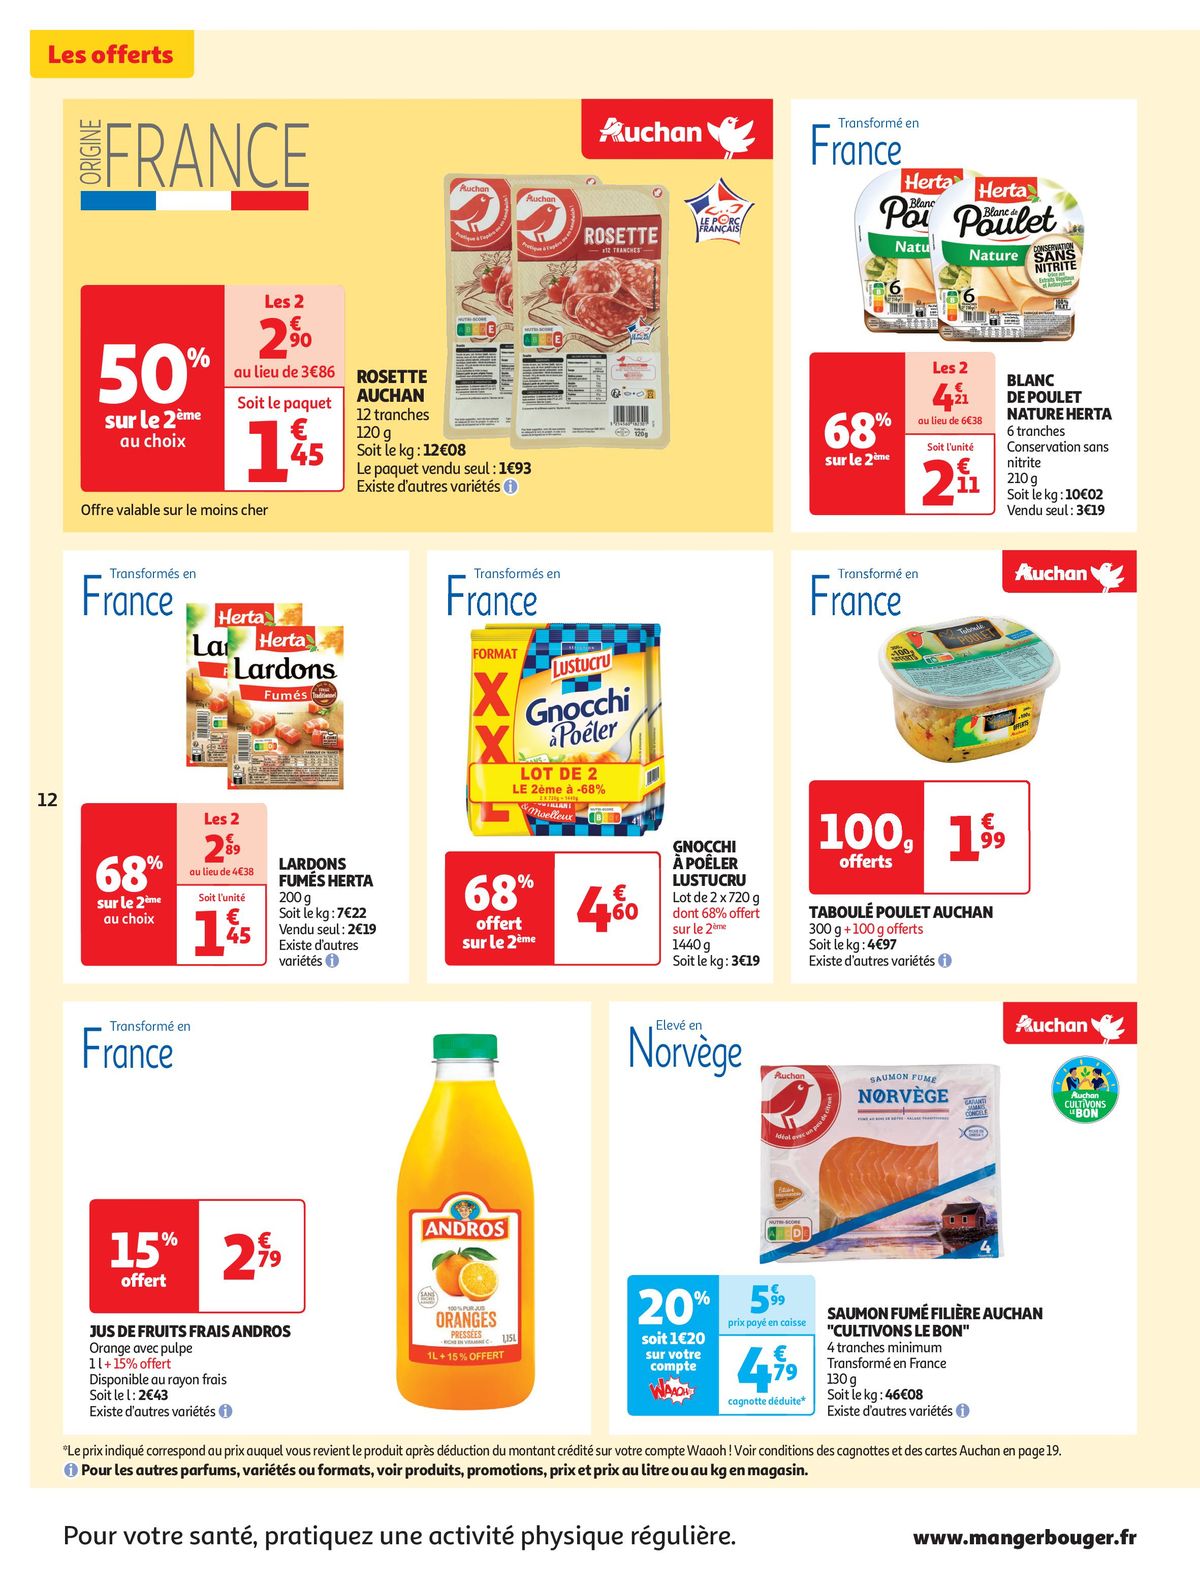 Catalogue Spécial Cuisine Gourmane dans votre supermarché, page 00012